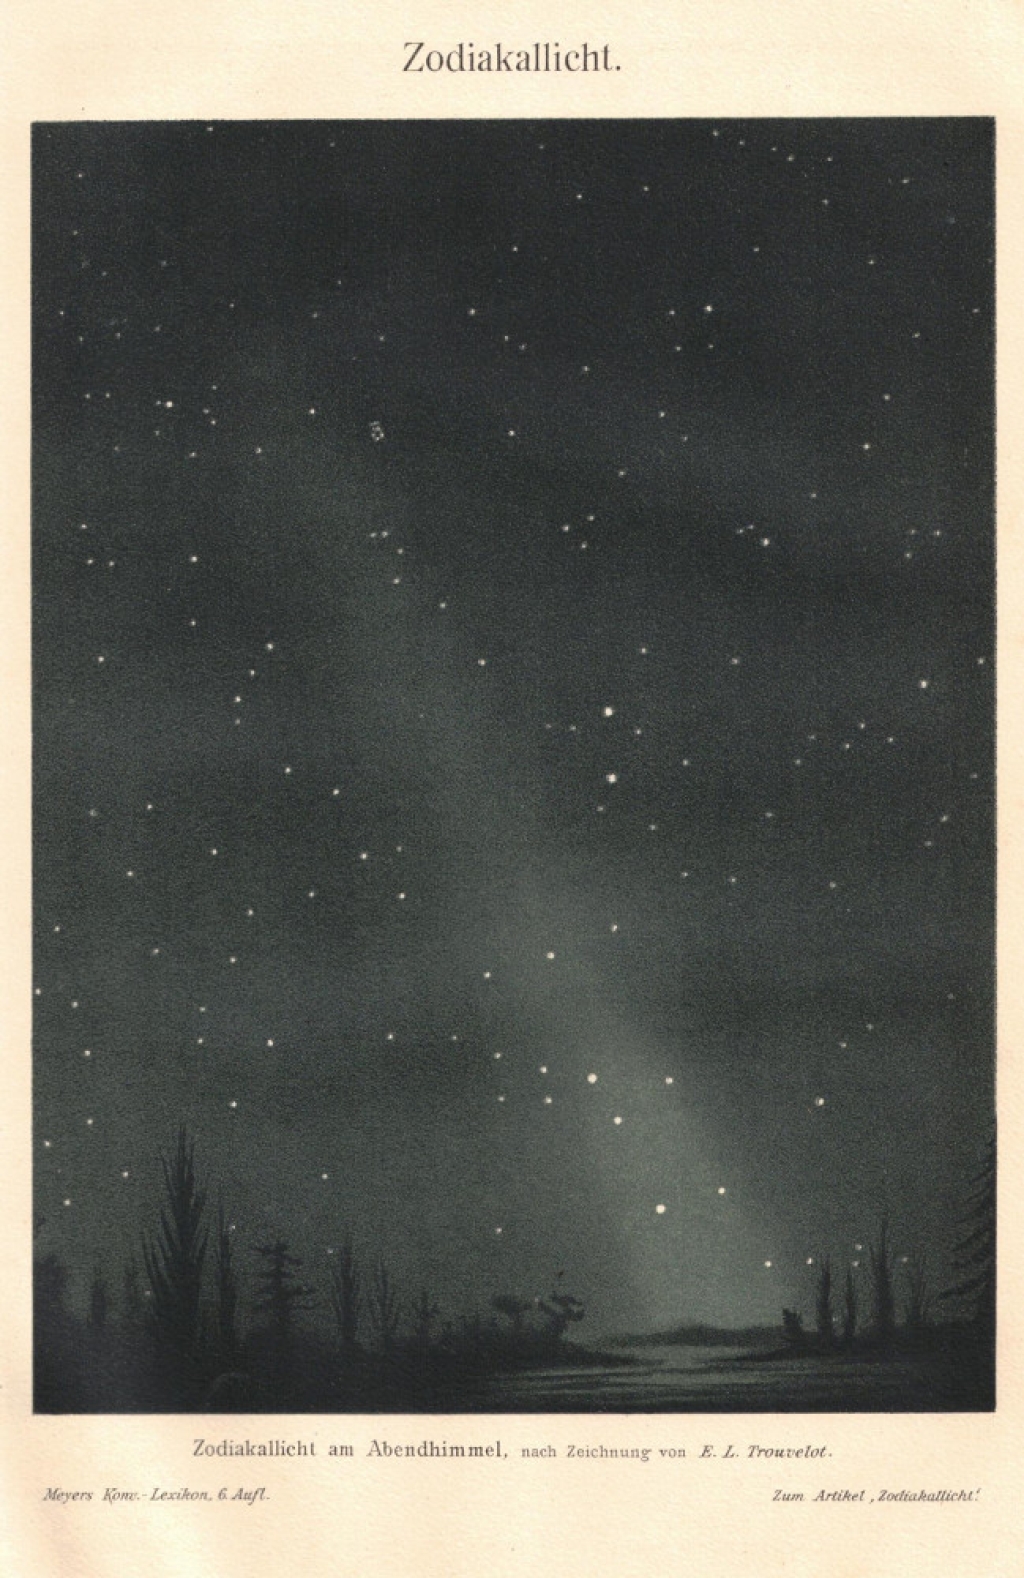 [rycina, 1908 r.] Zodiakallicht [światło zodiakalne]